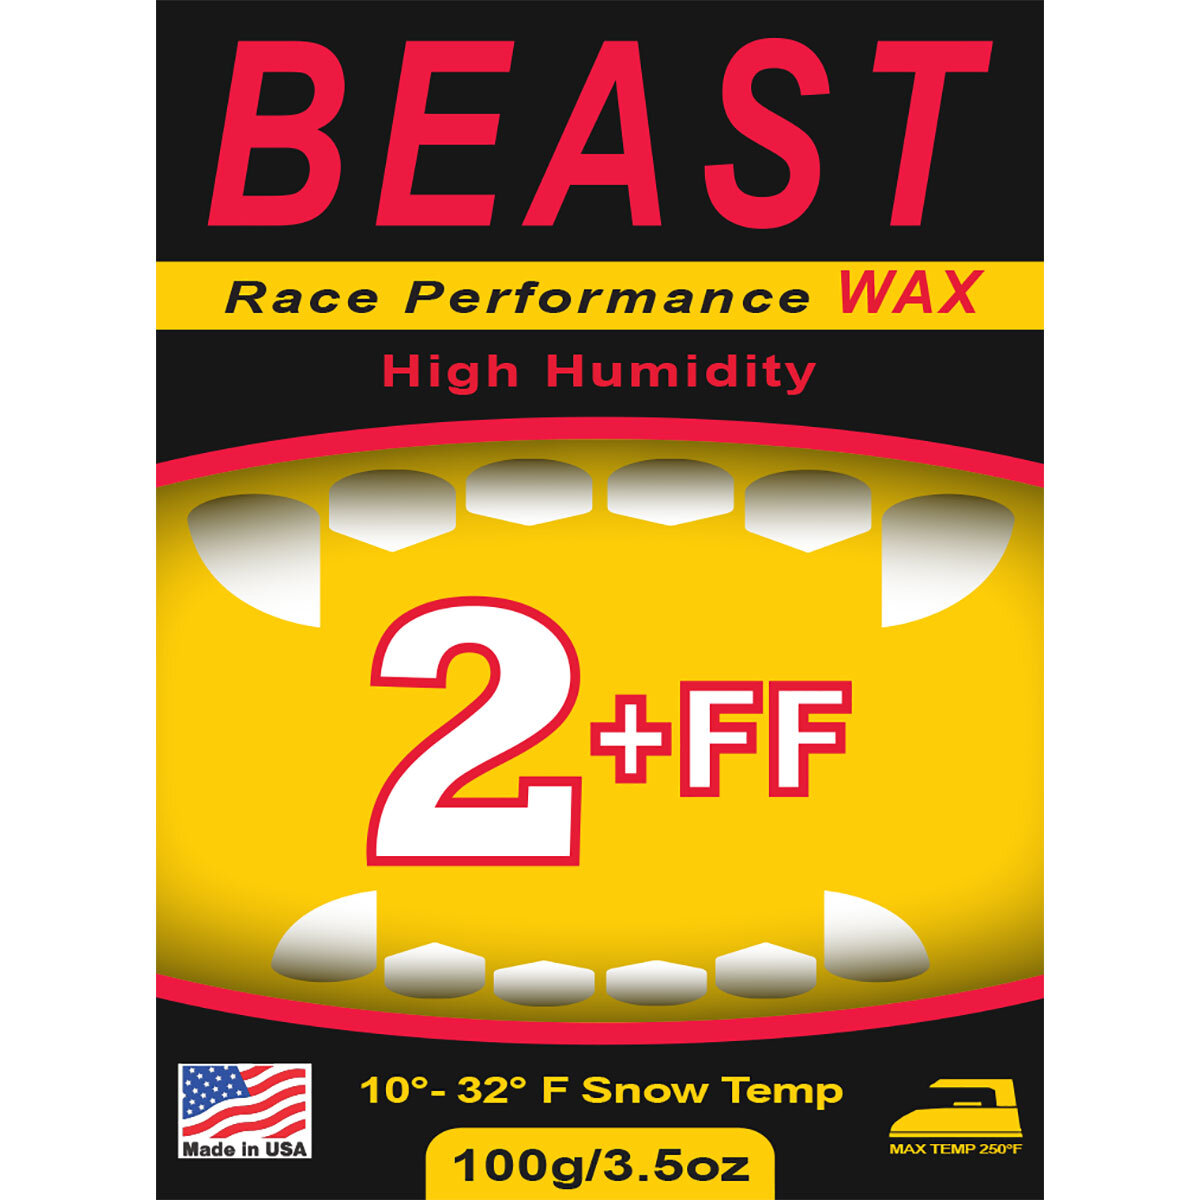 BEAST 2 Plus FF Race Wax